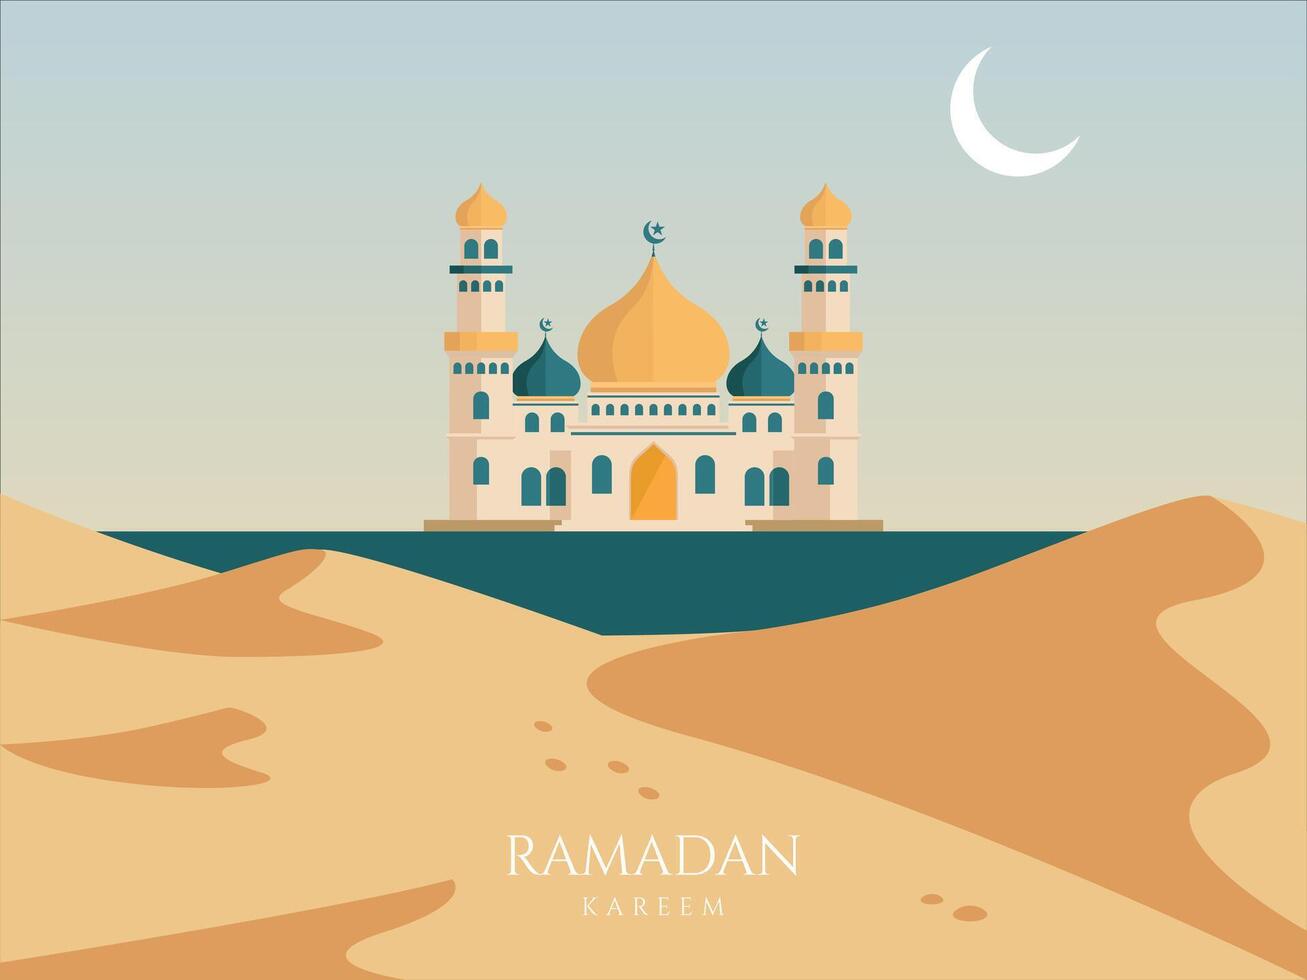 Ramadan kareem achtergrond, modern mooi ontwerp met moskee, maan vector